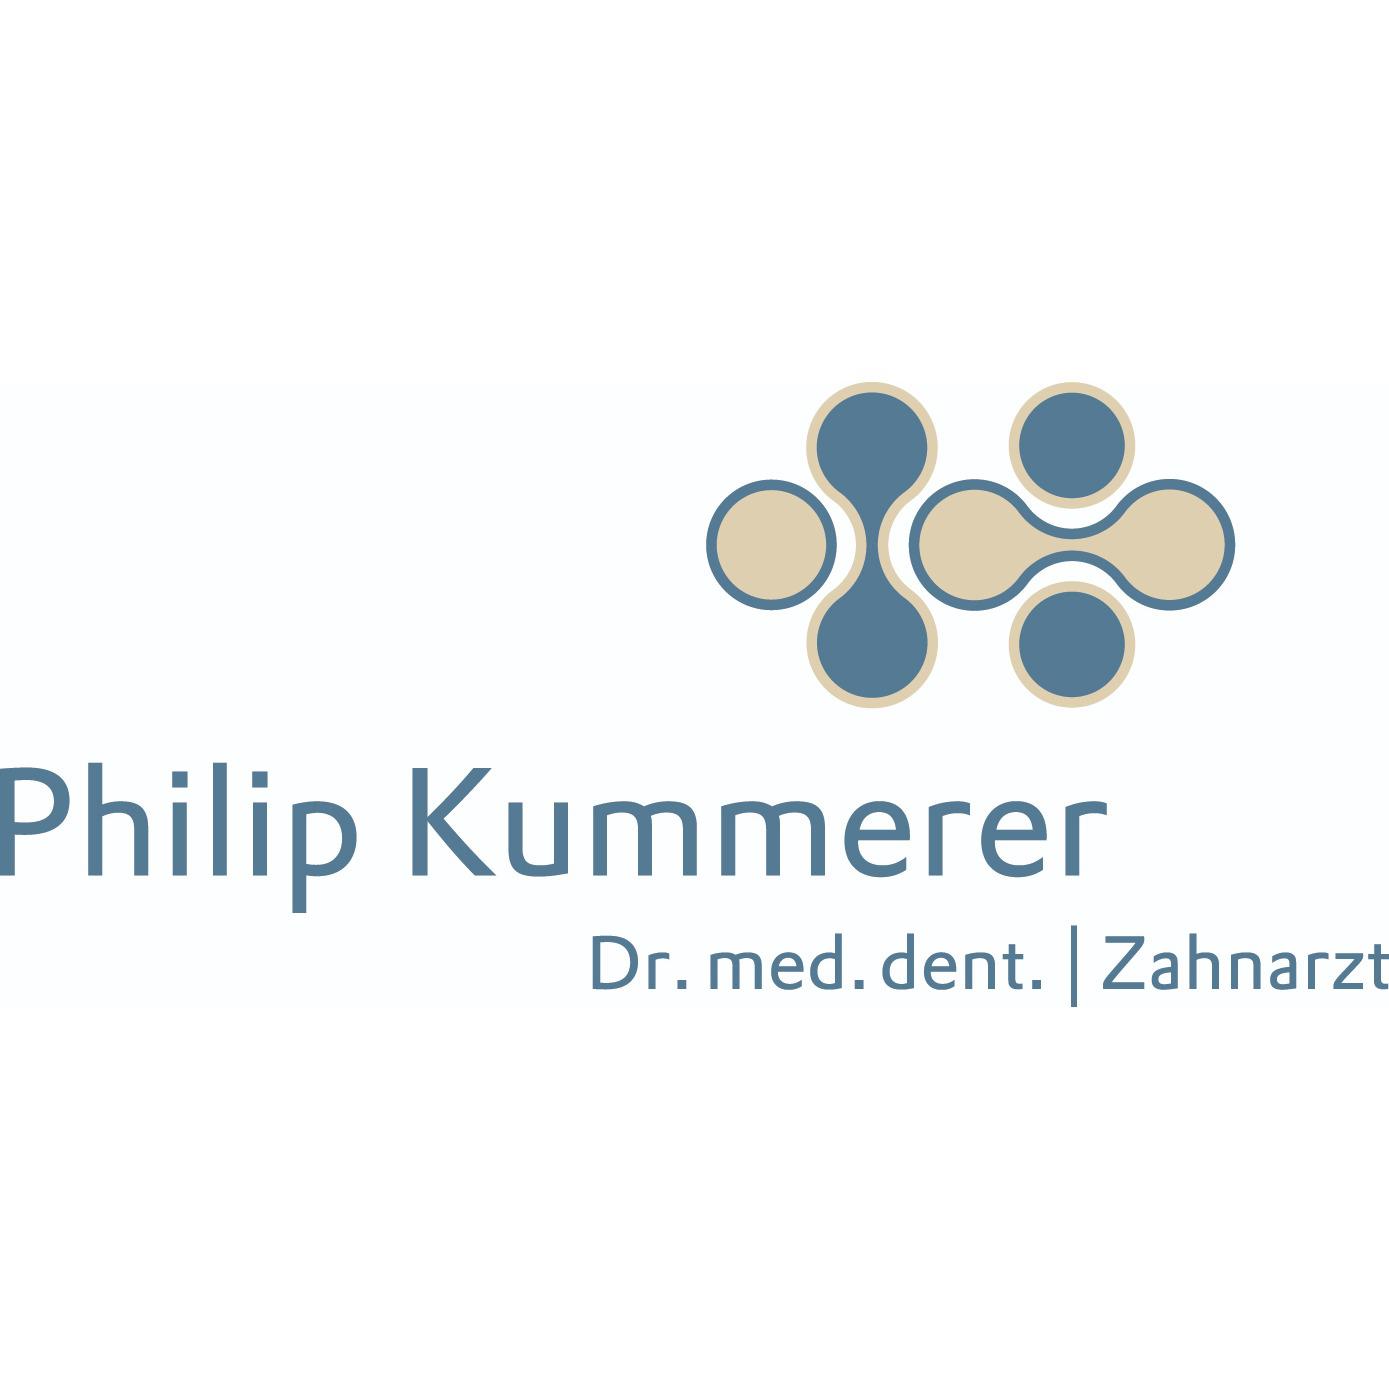 Dr. Philip Kummerer - Zahnarzt Pinneberg in Pinneberg - Logo